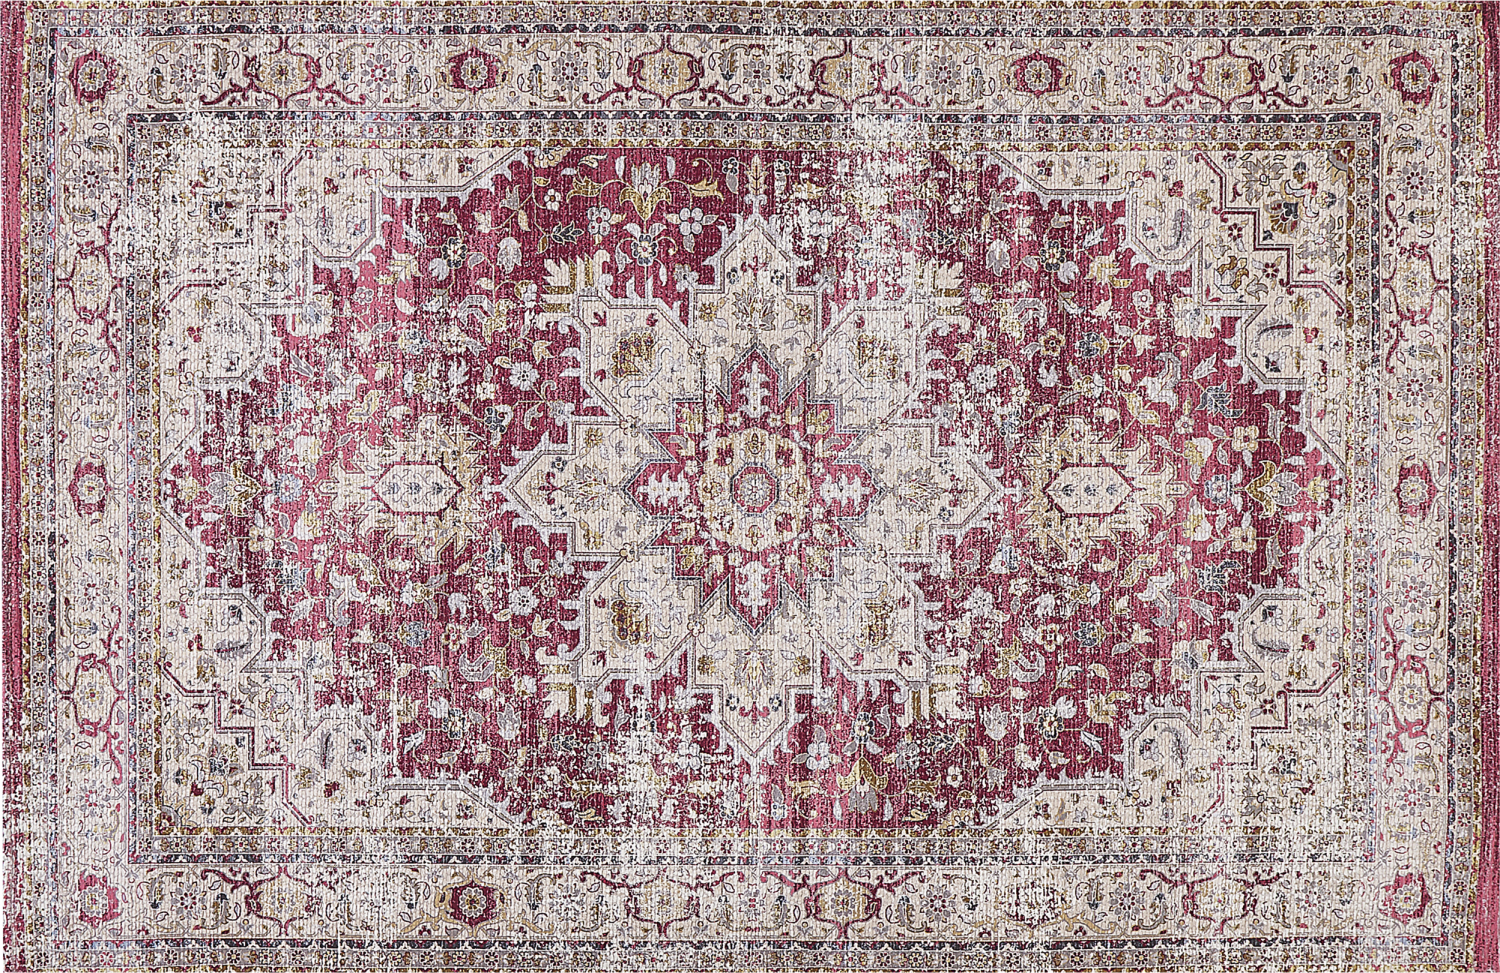 Teppich mehrfarbig orientalisches Muster 150 x 230 cm Kurzflor ARHAVI Bild 1